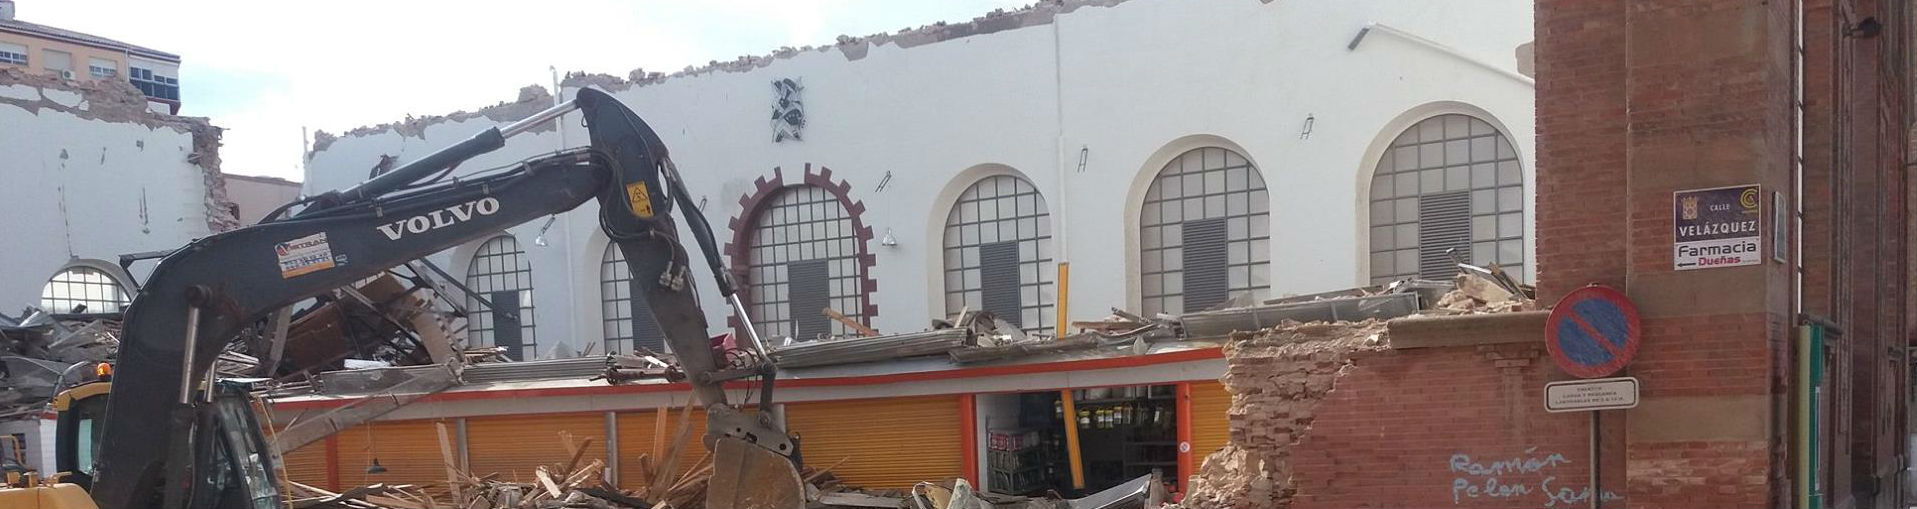 Una grúa lleva a cabo tareas de desescombro tras el derrumbe del mercado de abastos de Linares